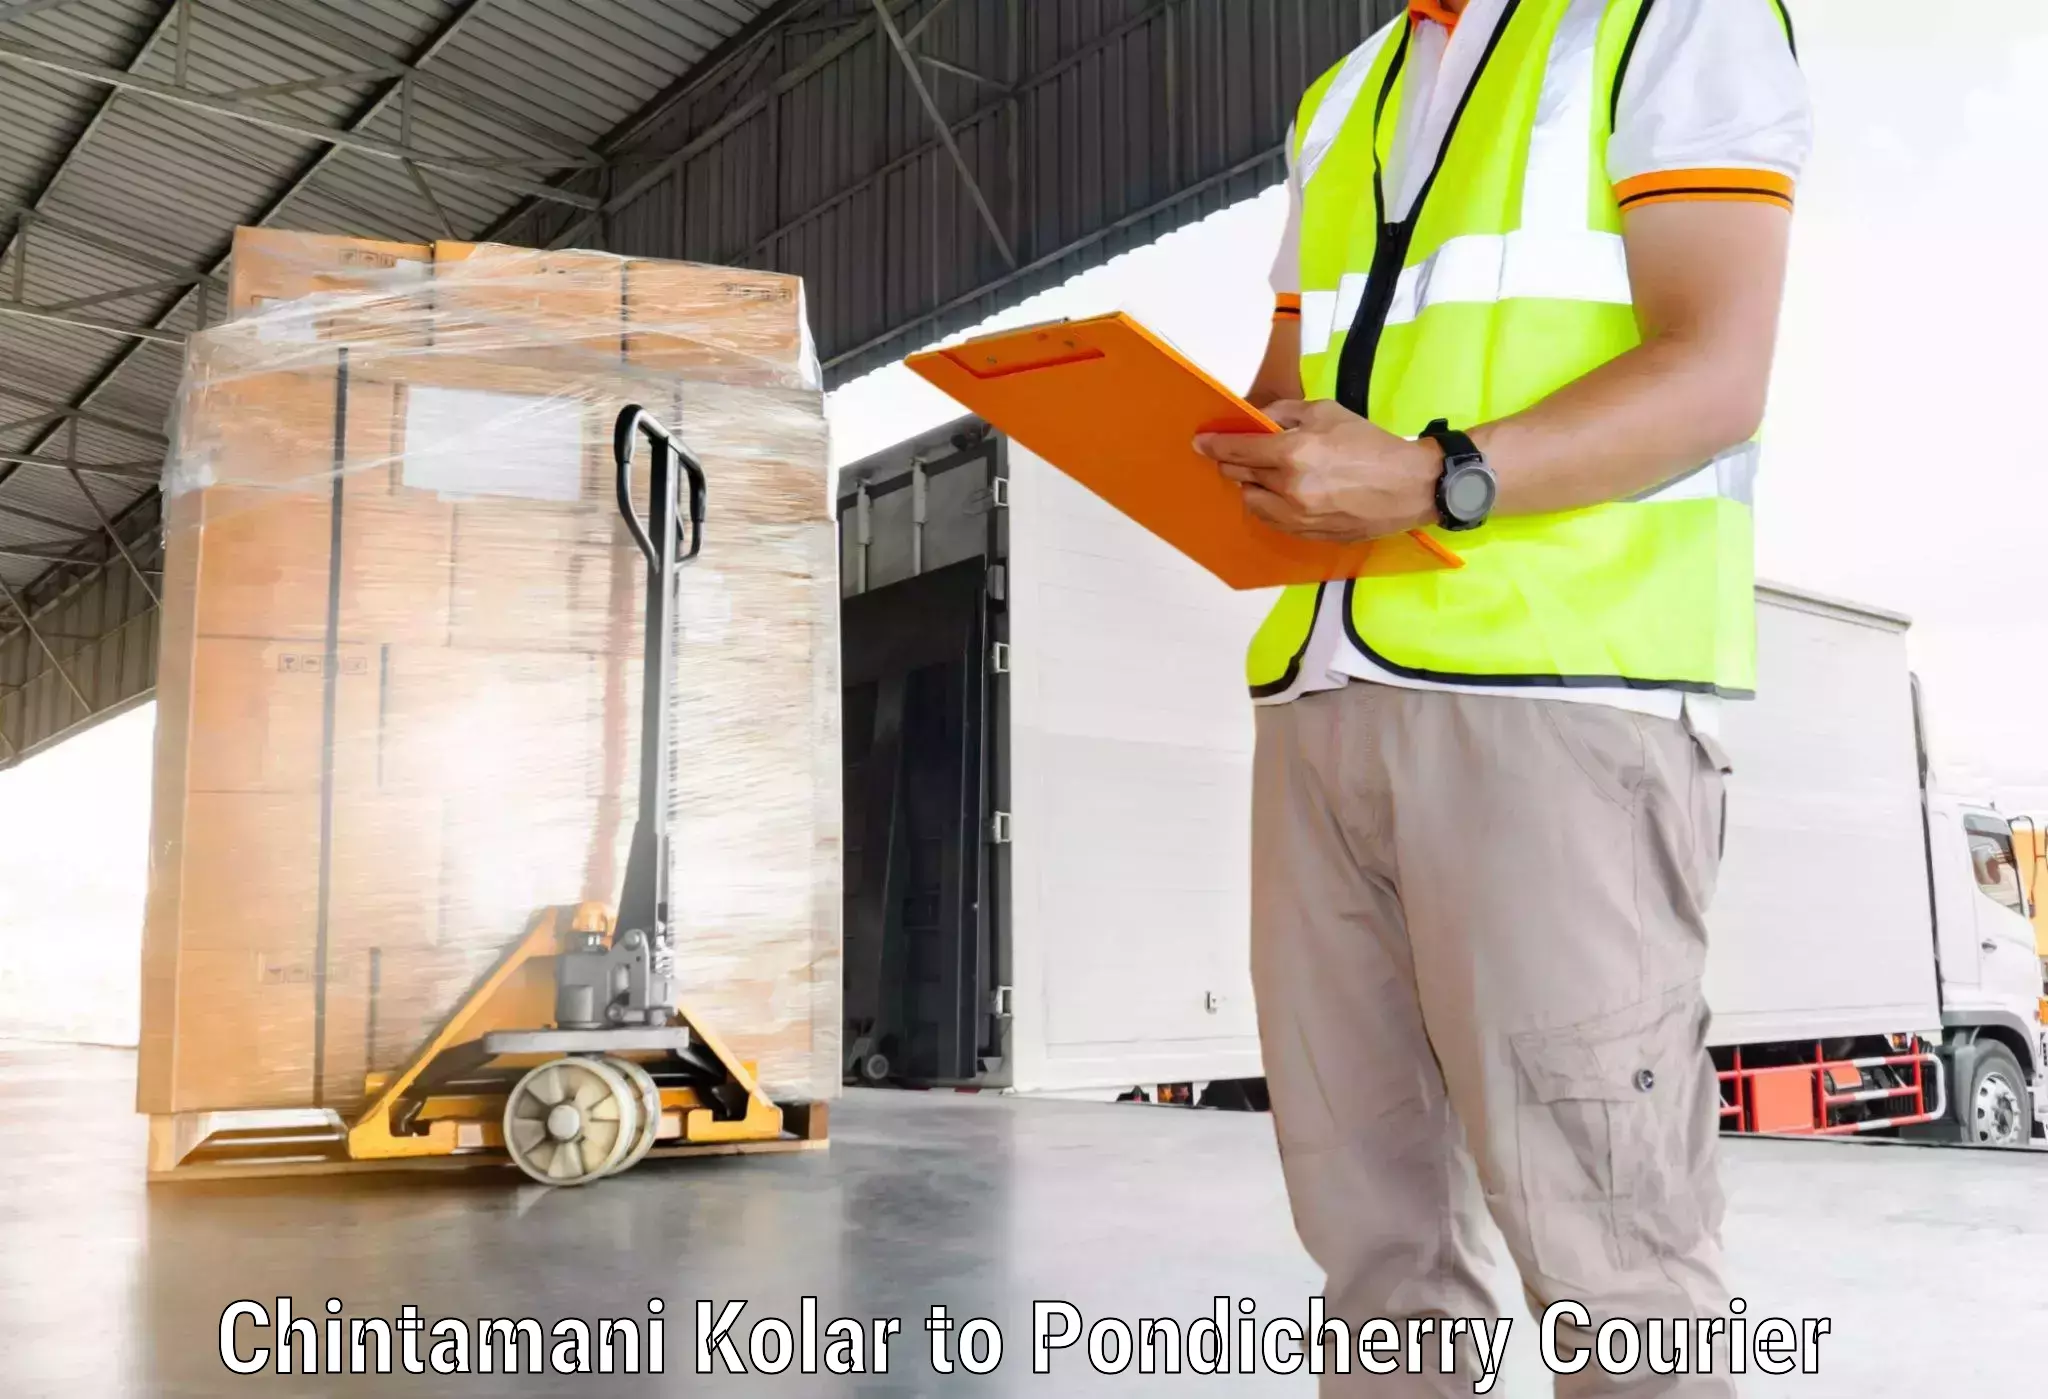 Residential courier service Chintamani Kolar to Pondicherry